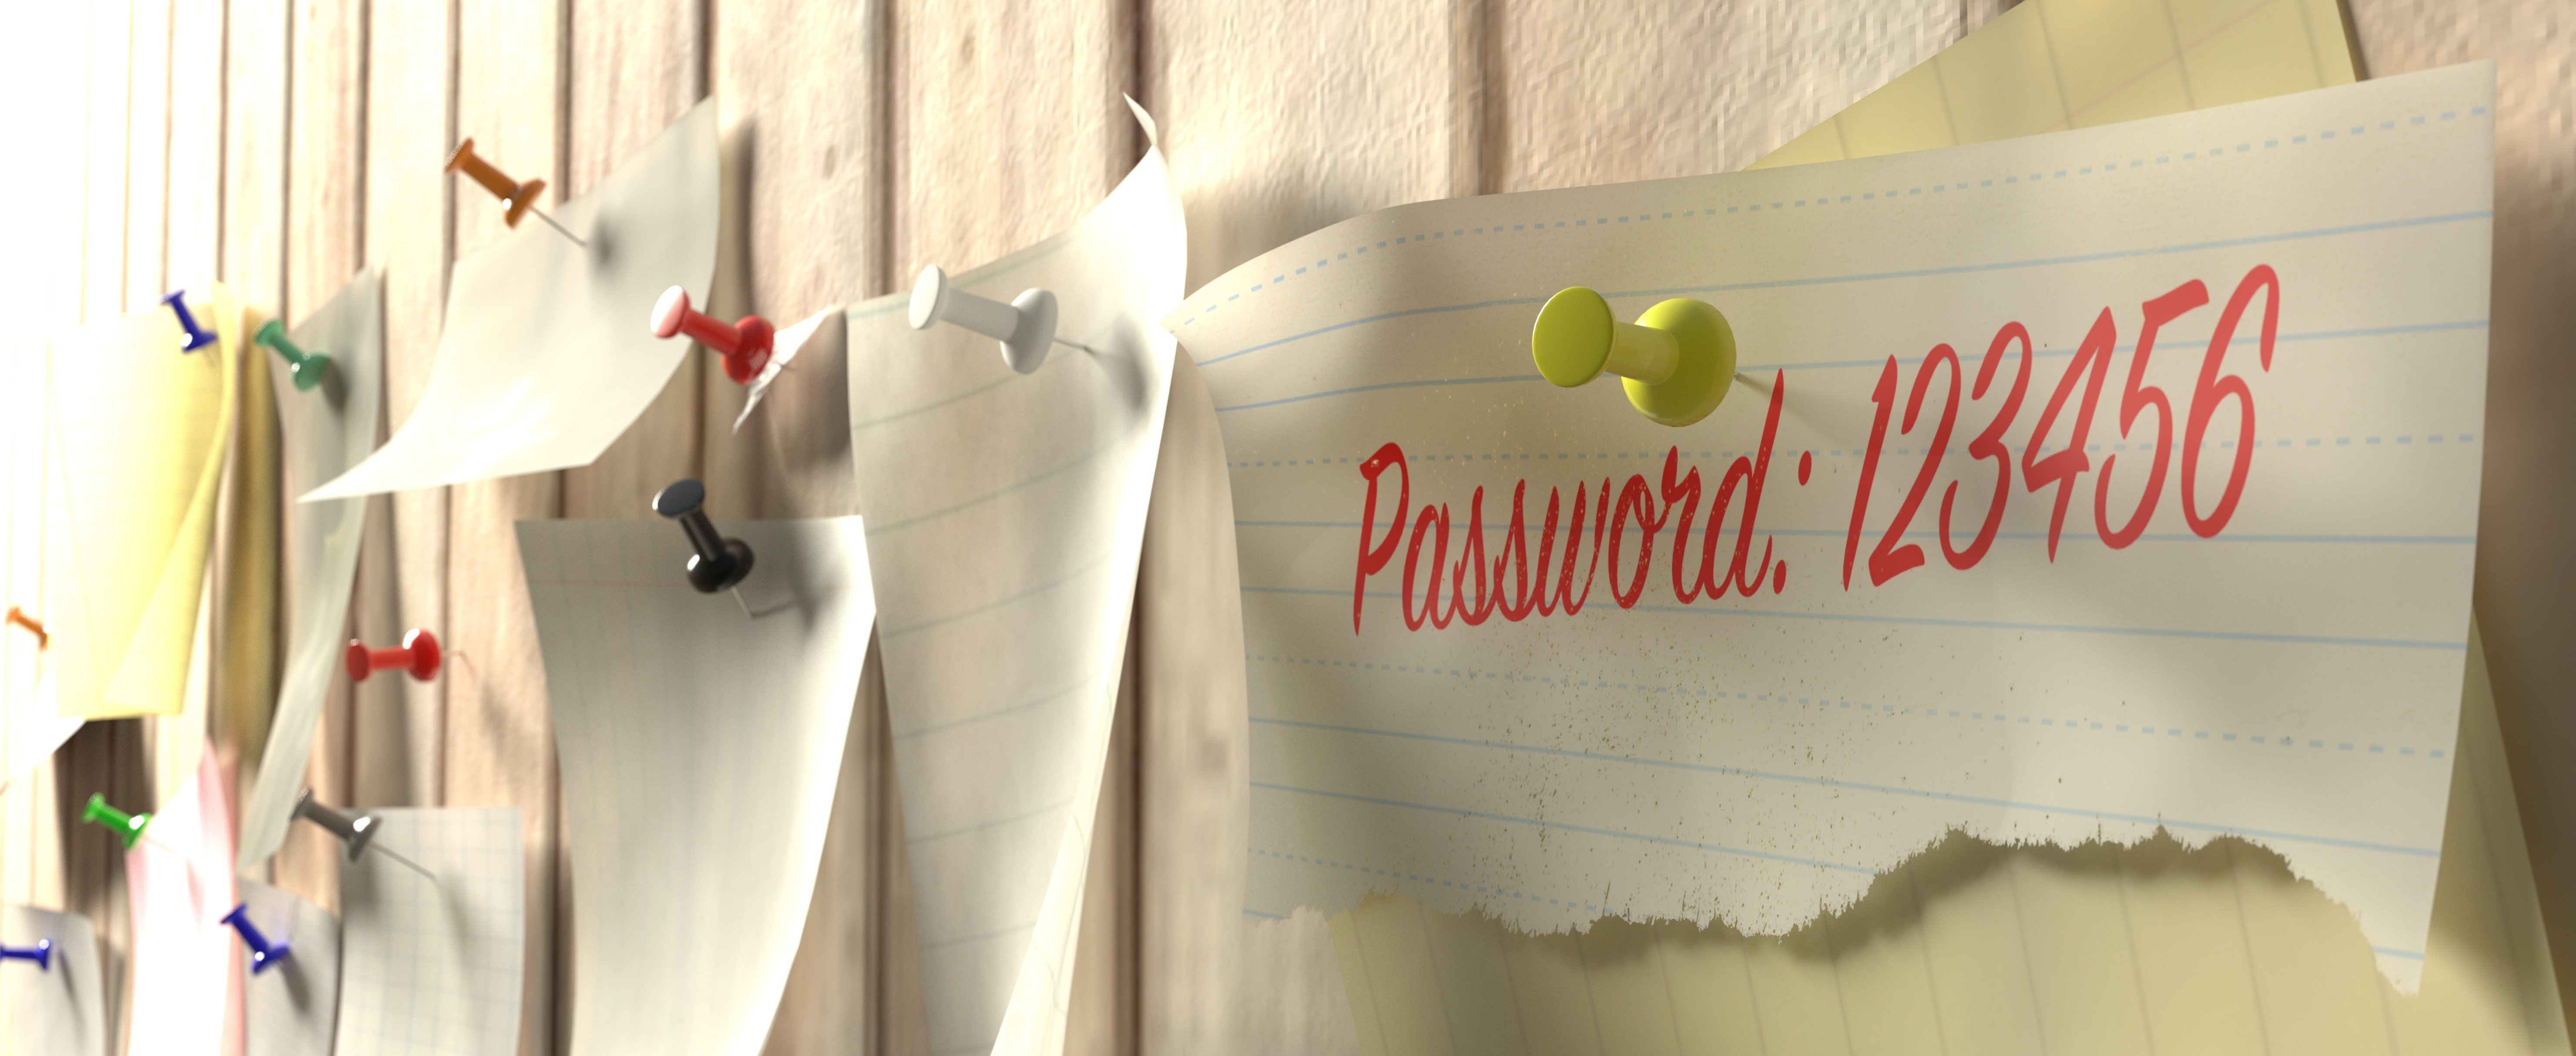 Image of easy password